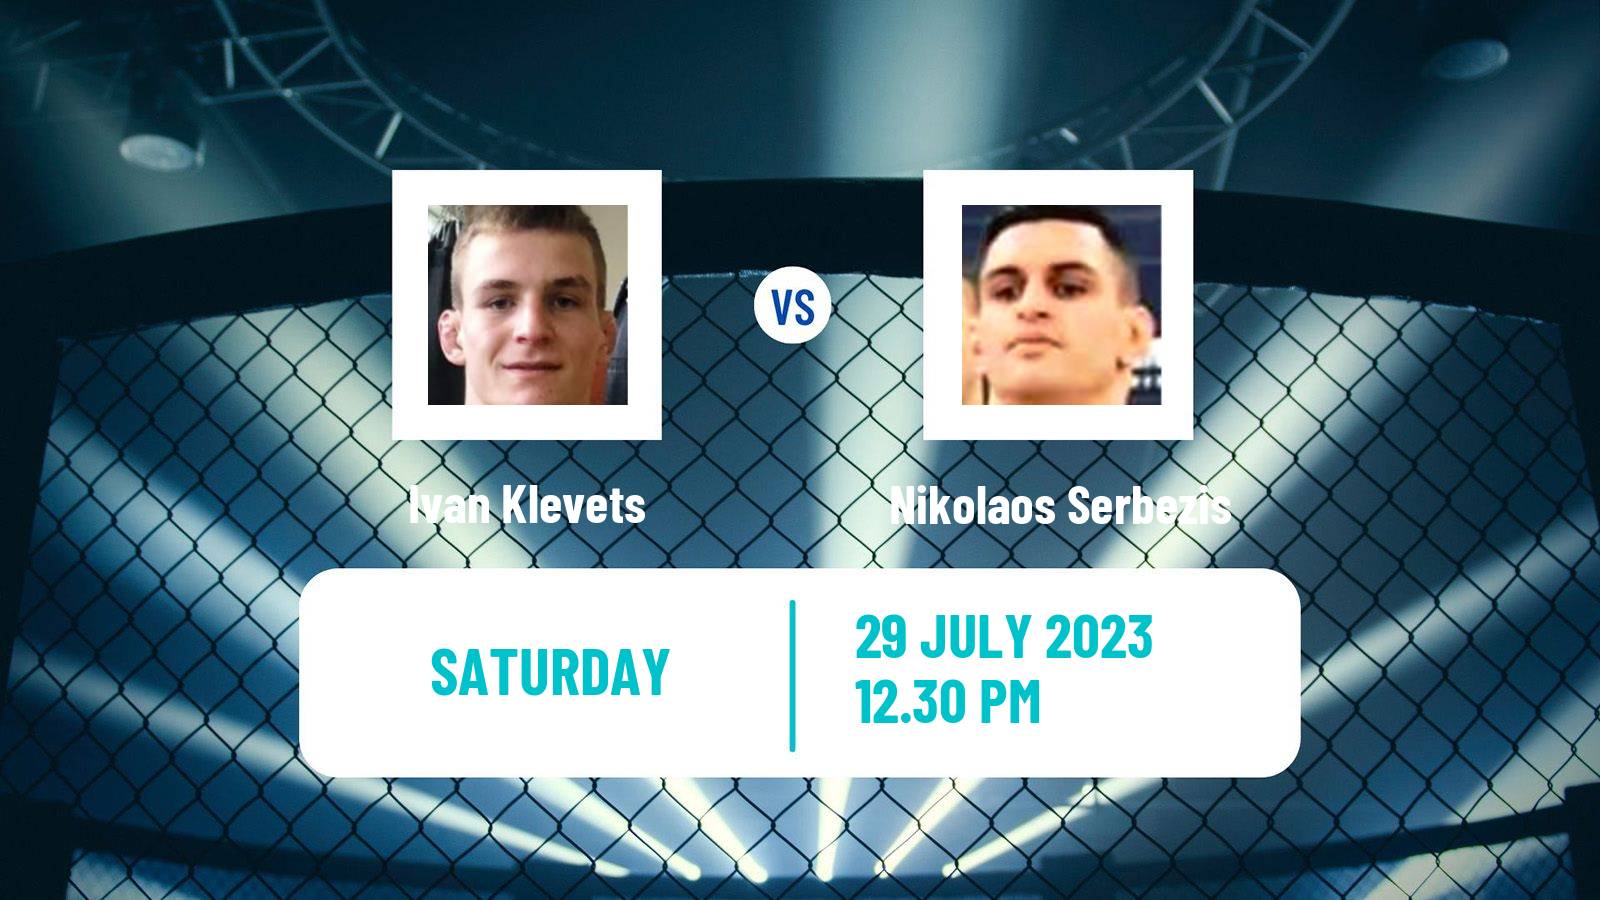 MMA Featherweight Oktagon Men Ivan Klevets - Nikolaos Serbezis